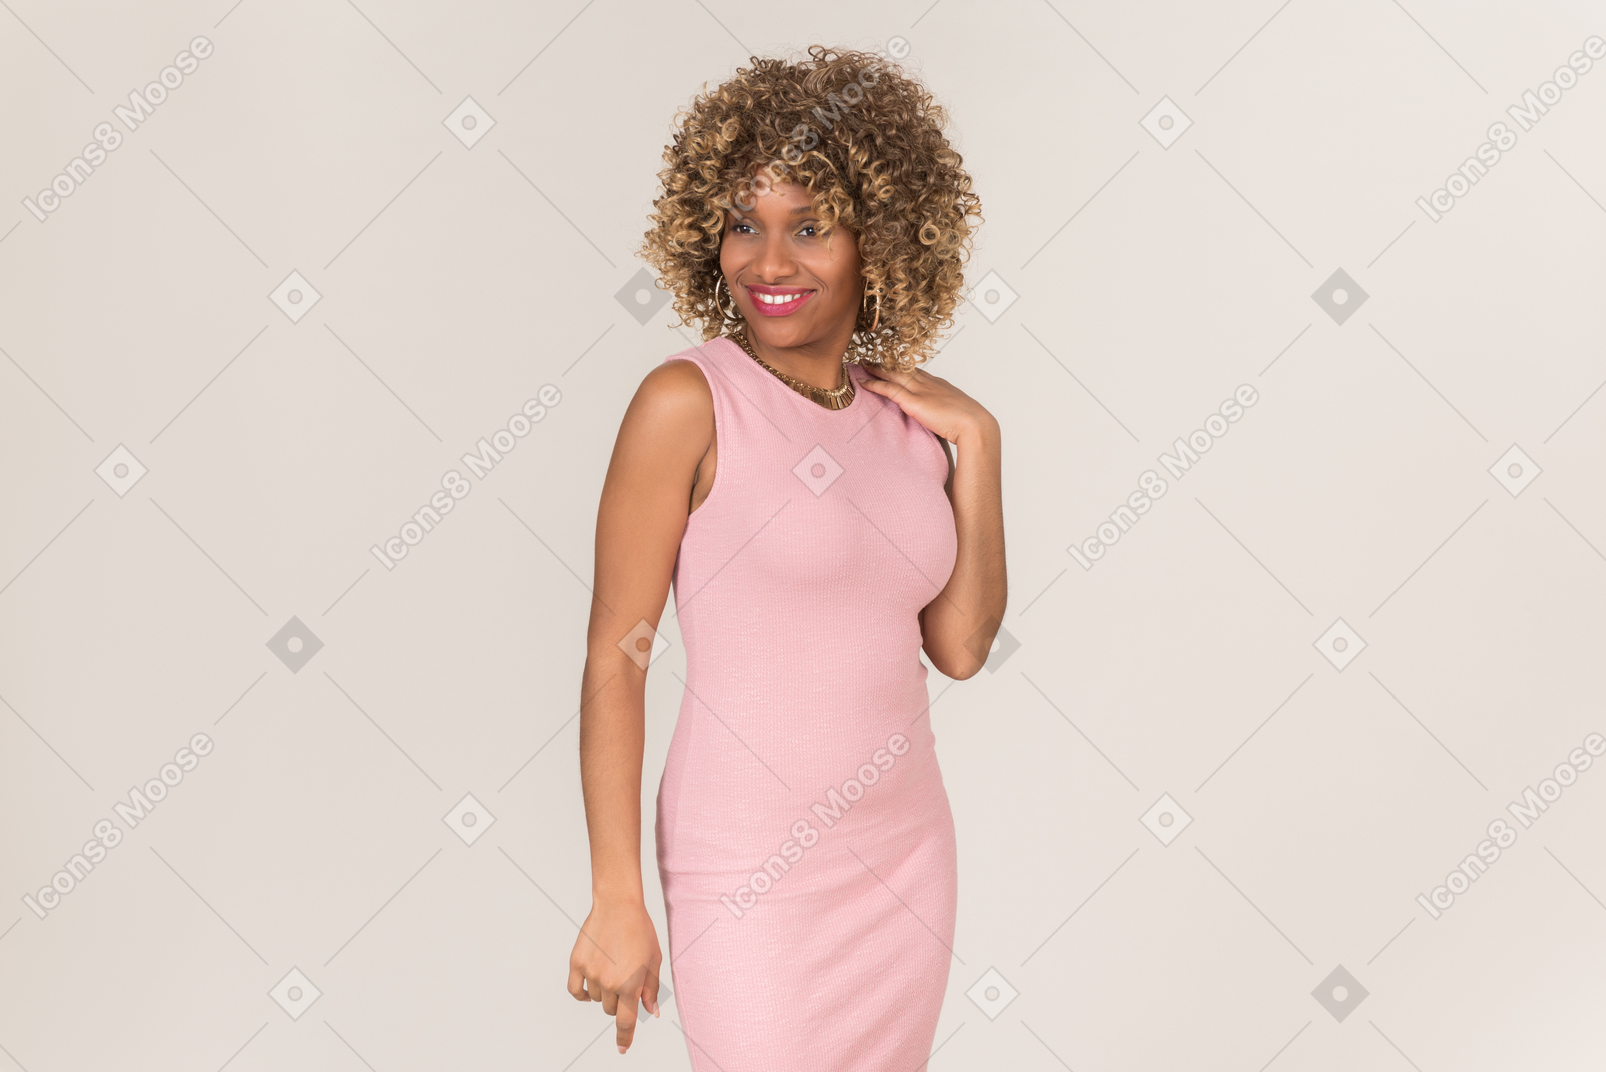 Una mujer vestida de rosa de pie y sonriendo